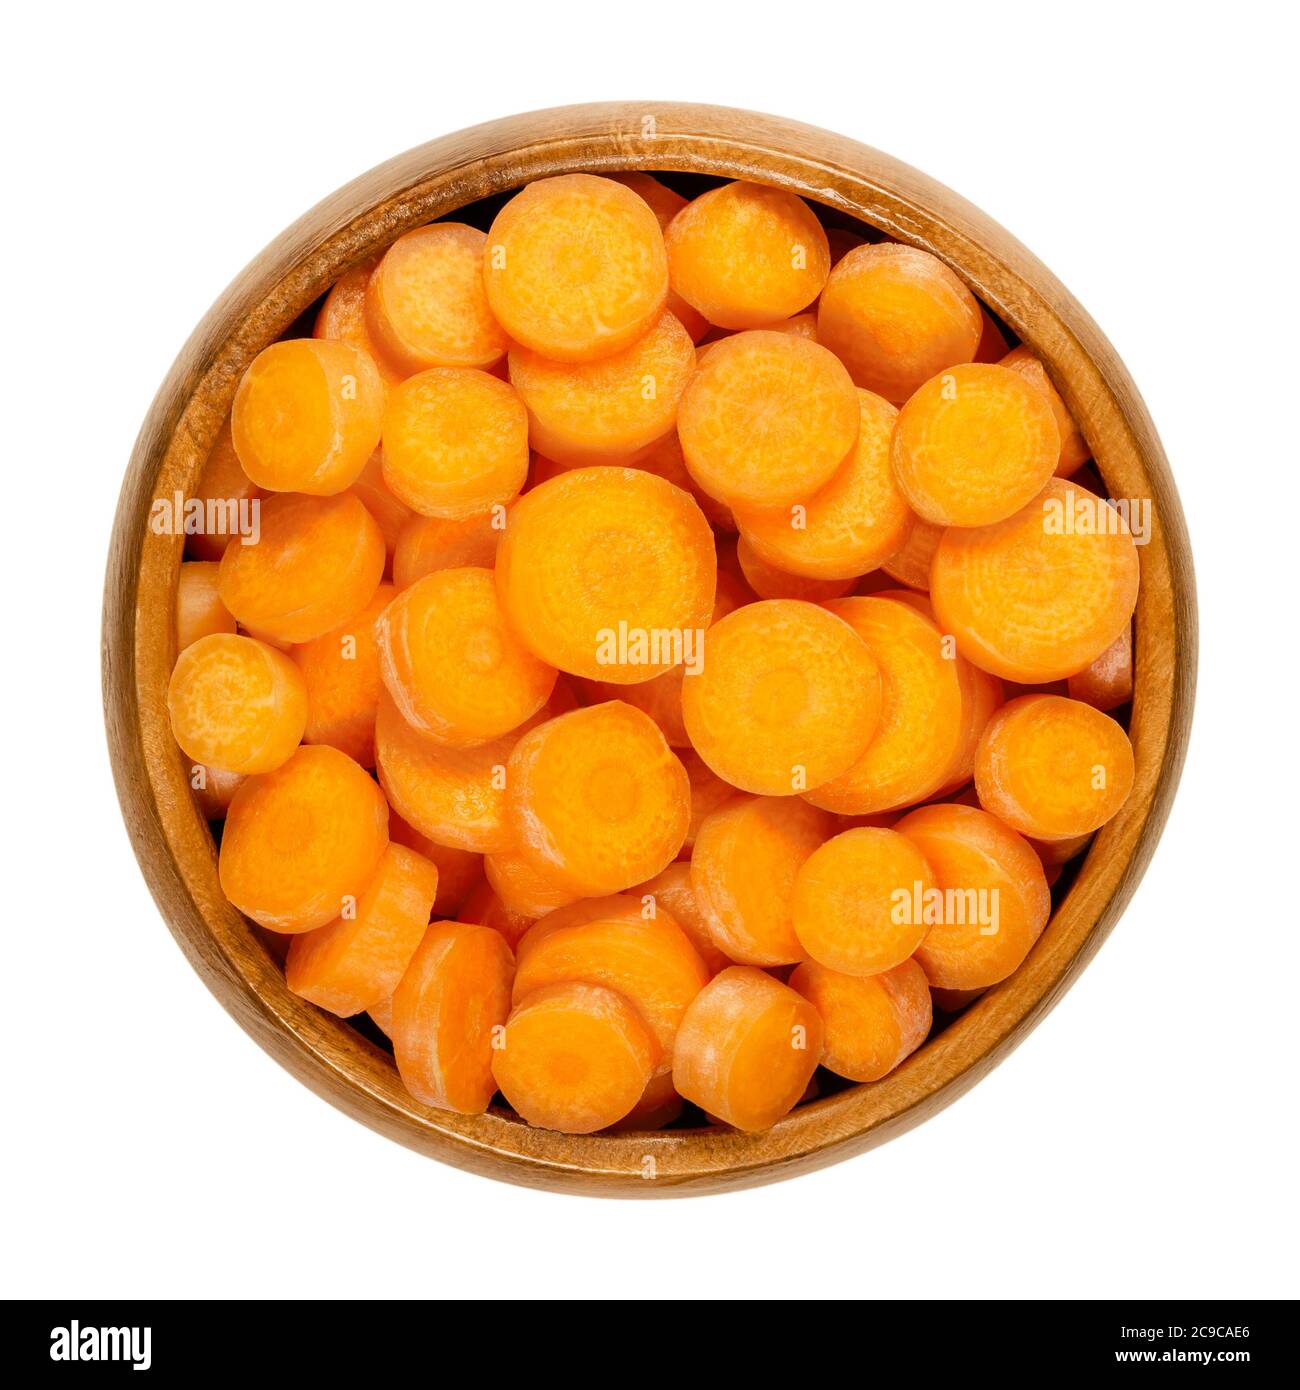 Petites tranches de carottes dans un bol en bois. Croquantes et fraîches, non pelées, petites et jeunes carottes, coupées en disques ronds, prêtes à manger et en-cas. Gros plan Banque D'Images